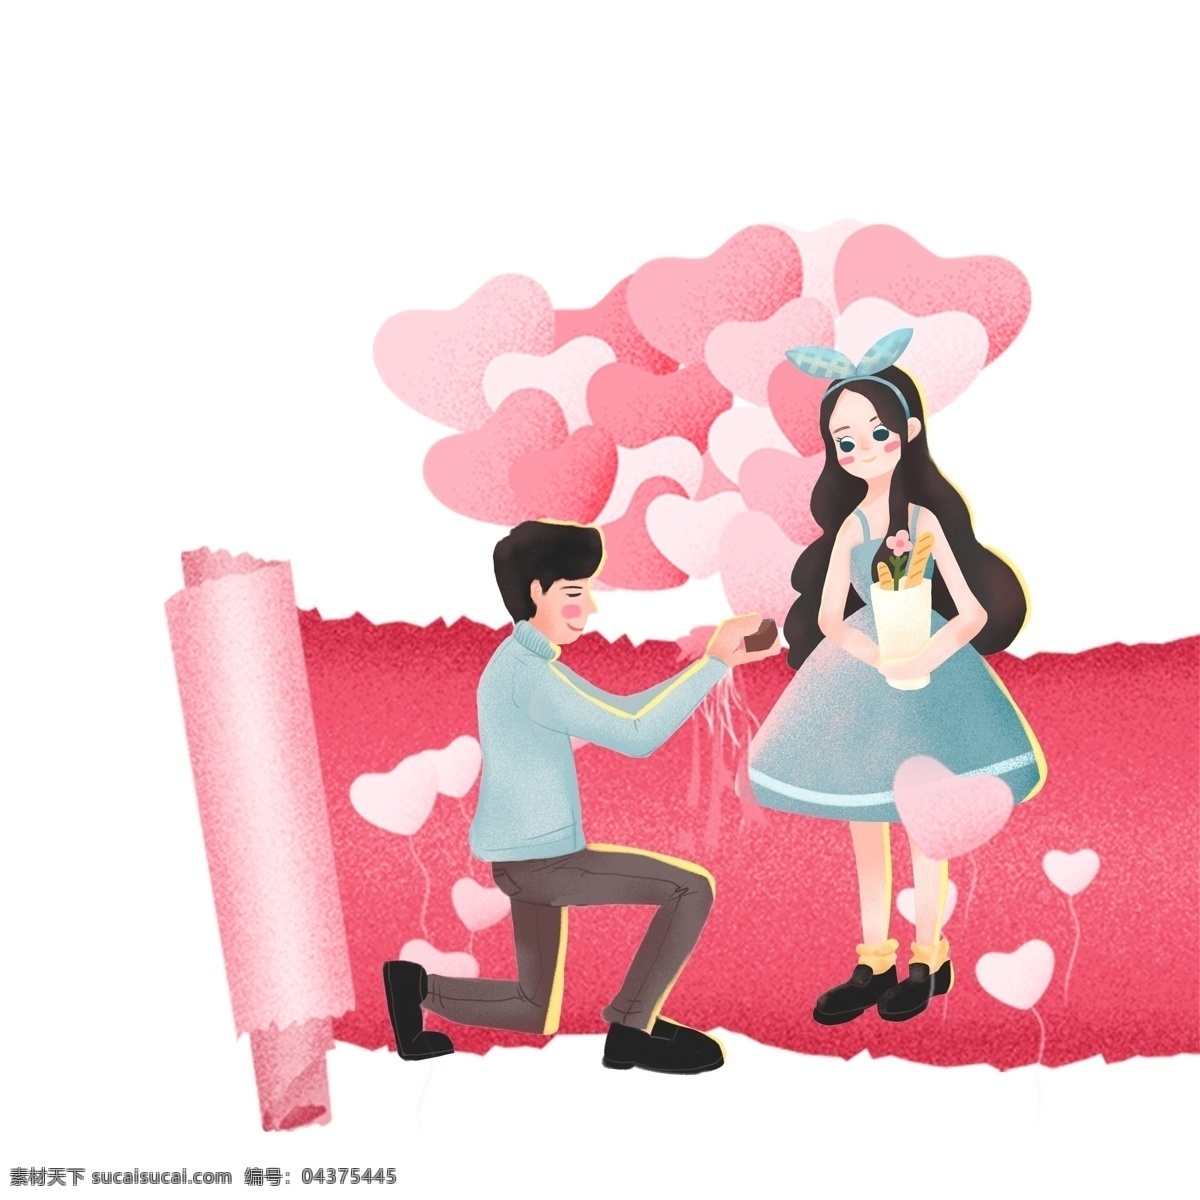 浪漫 520 告白 情侣 元素 爱心 告白气球 粉色 人物 创意元素 手绘元素 psd元素 免抠元素 求婚人物